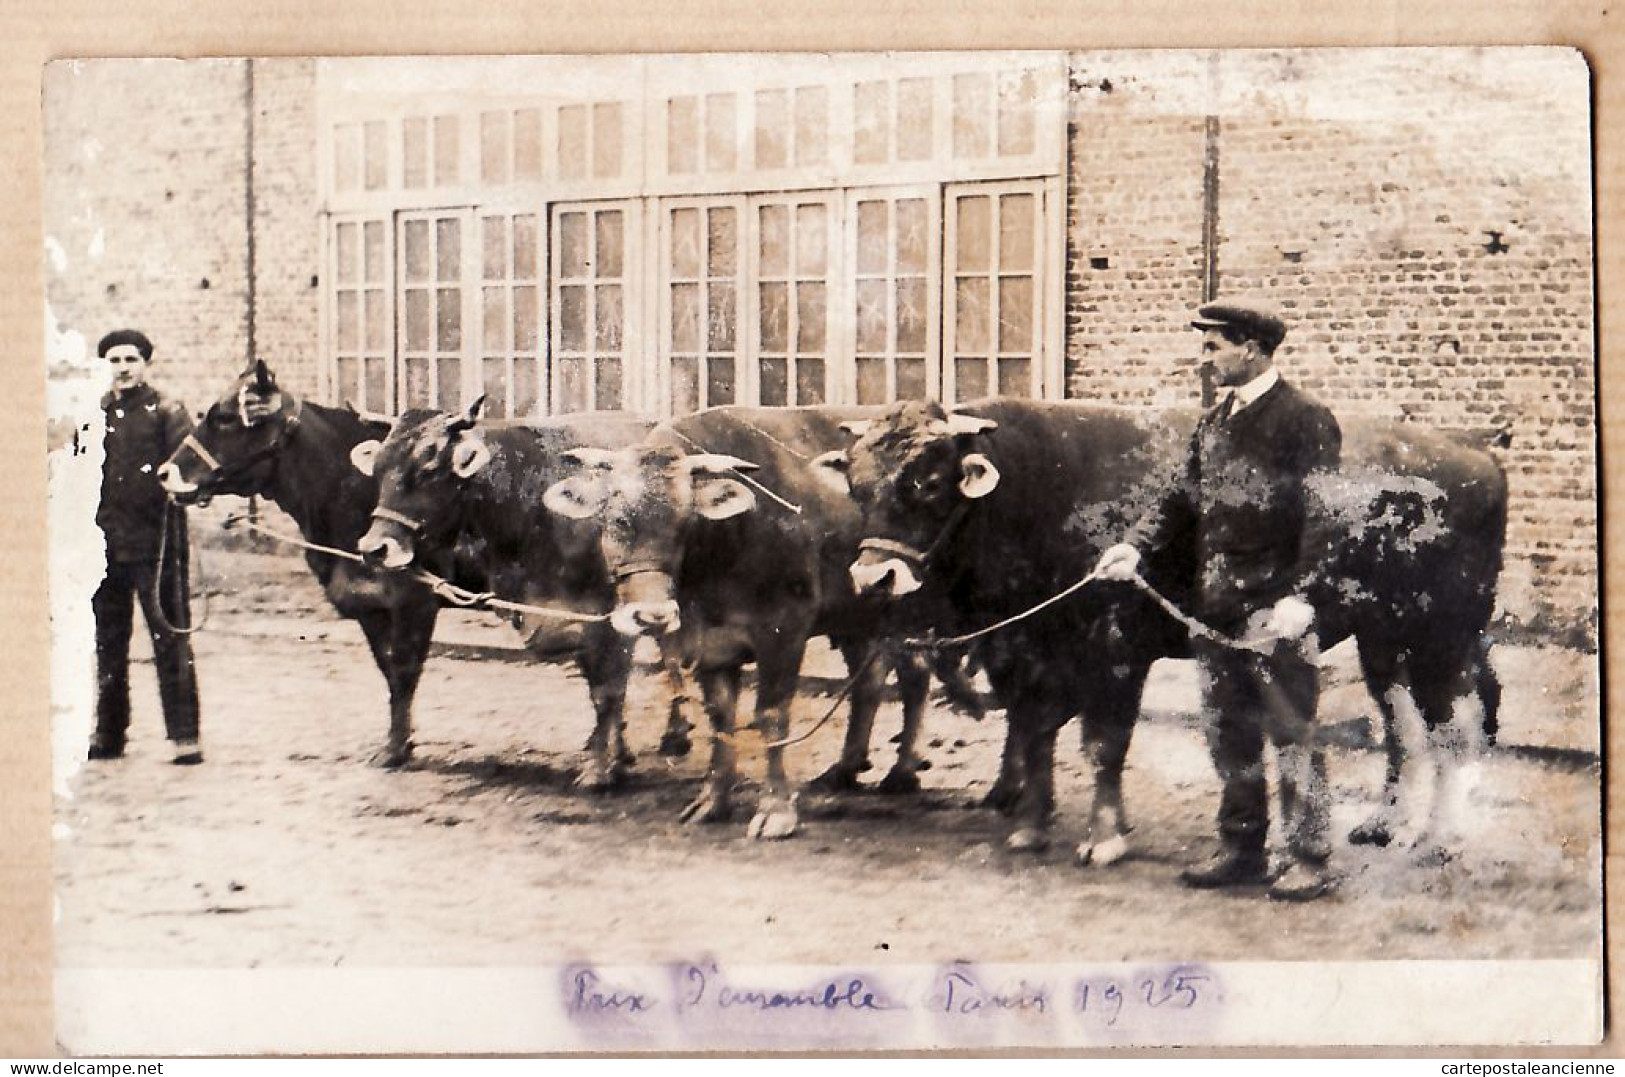 10838 / ROUEN Carte-Photo André CHAMBRY - Bétail De Pays PRIX D'ENSEMBLE Concours Agricole PARIS 1925 Cpagr - Rouen